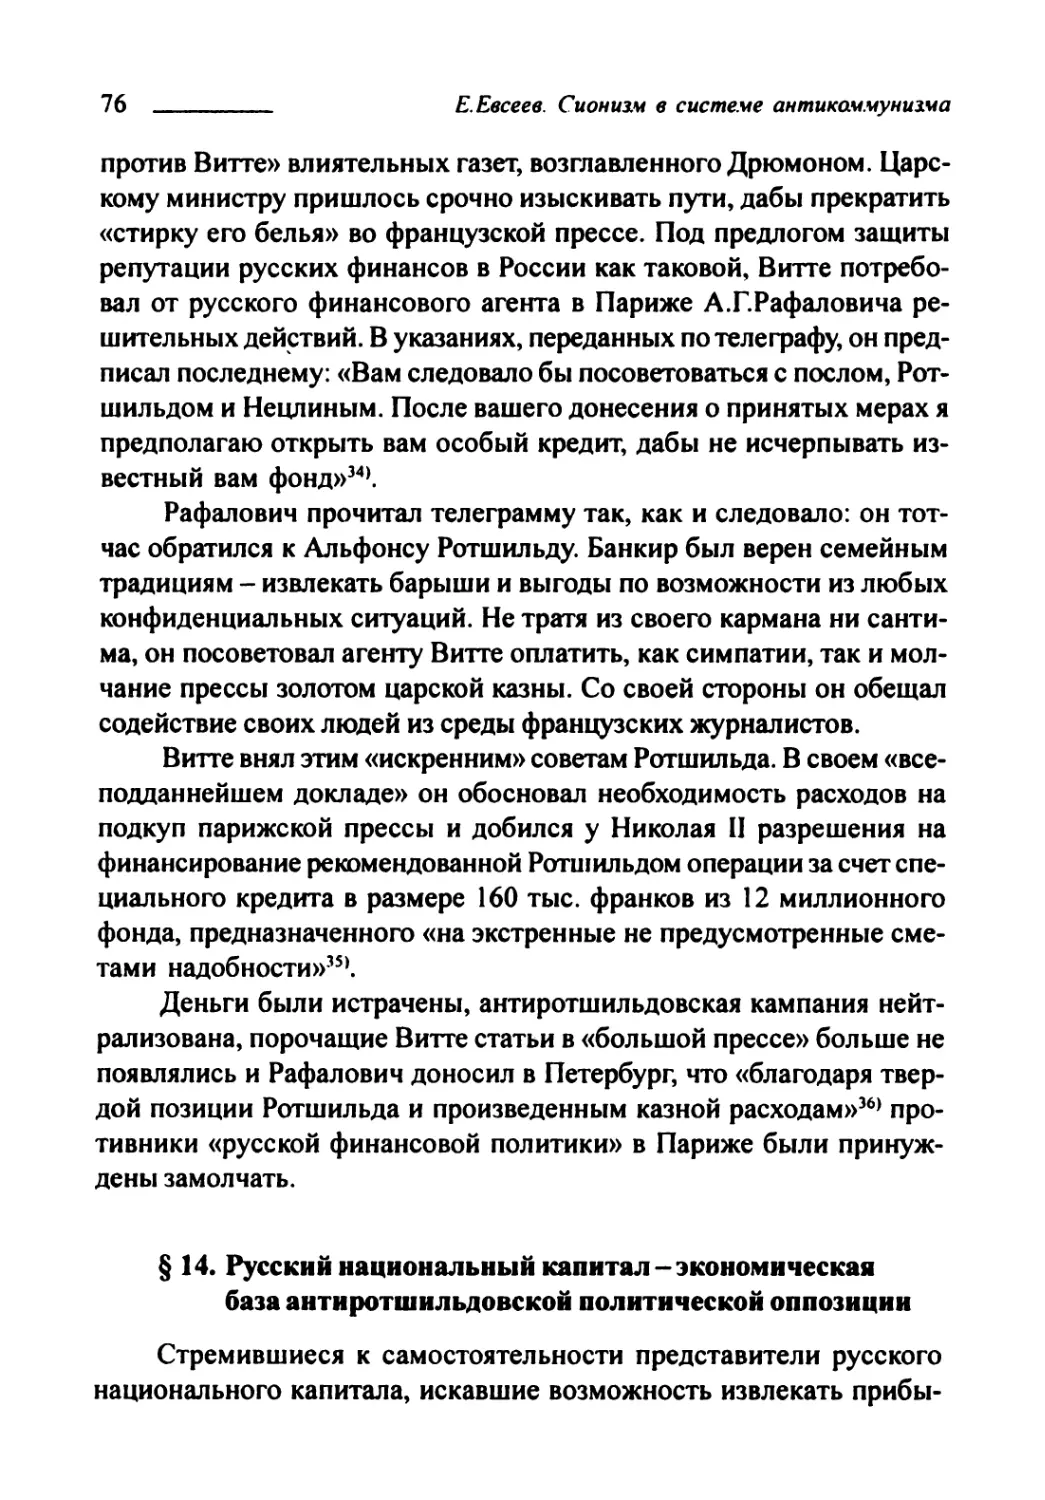 § 14. Русский национальный капитал — экономическая база антиротшильдовской политической оппозиции